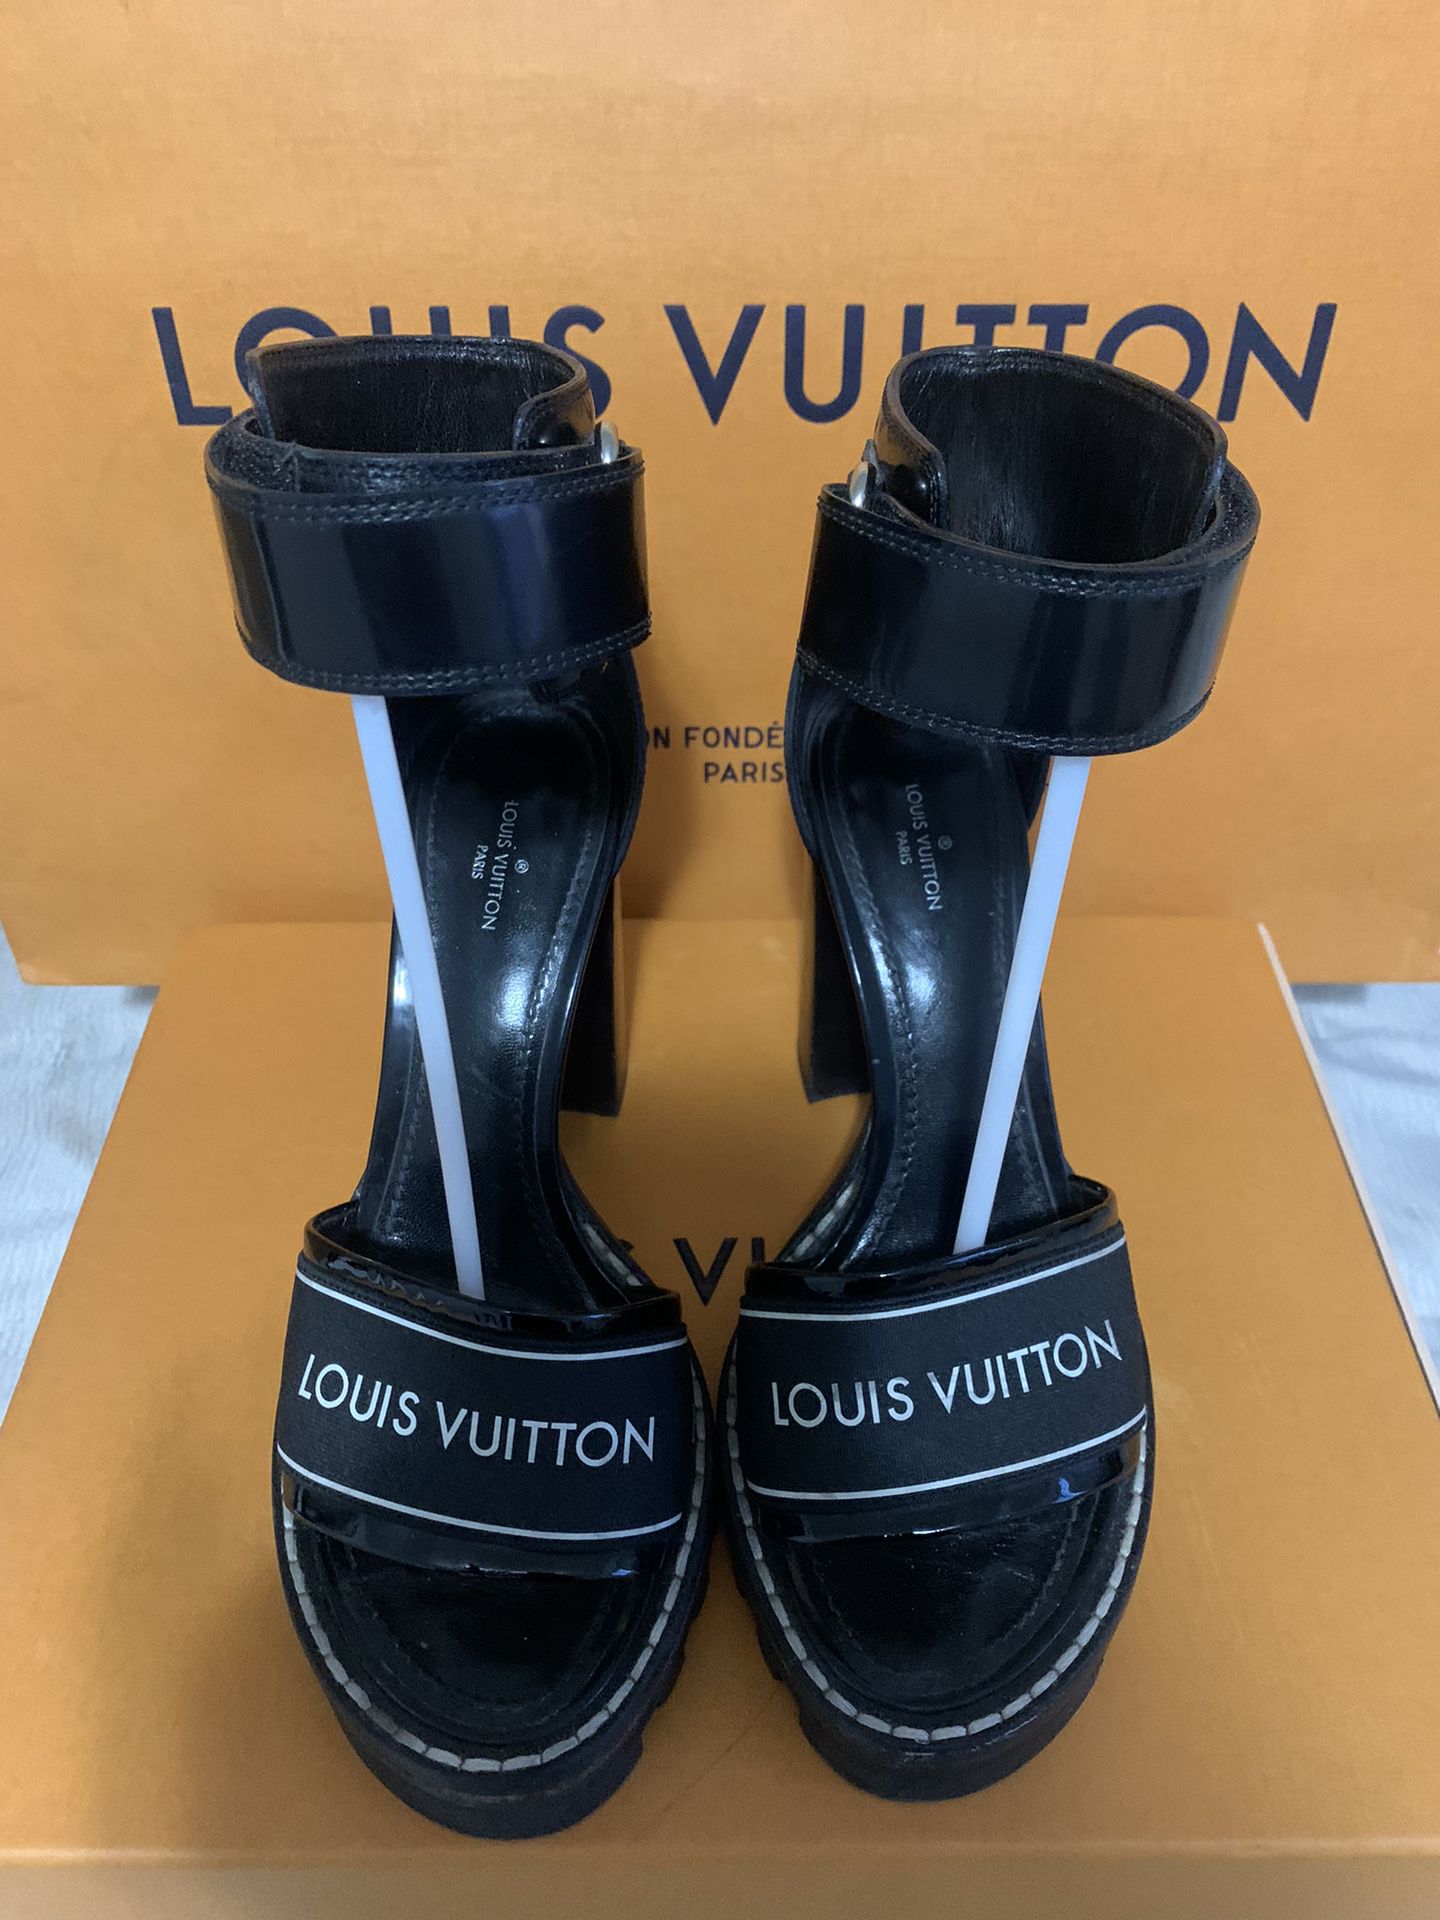 Louis Vuitton Patent Leather Sandals